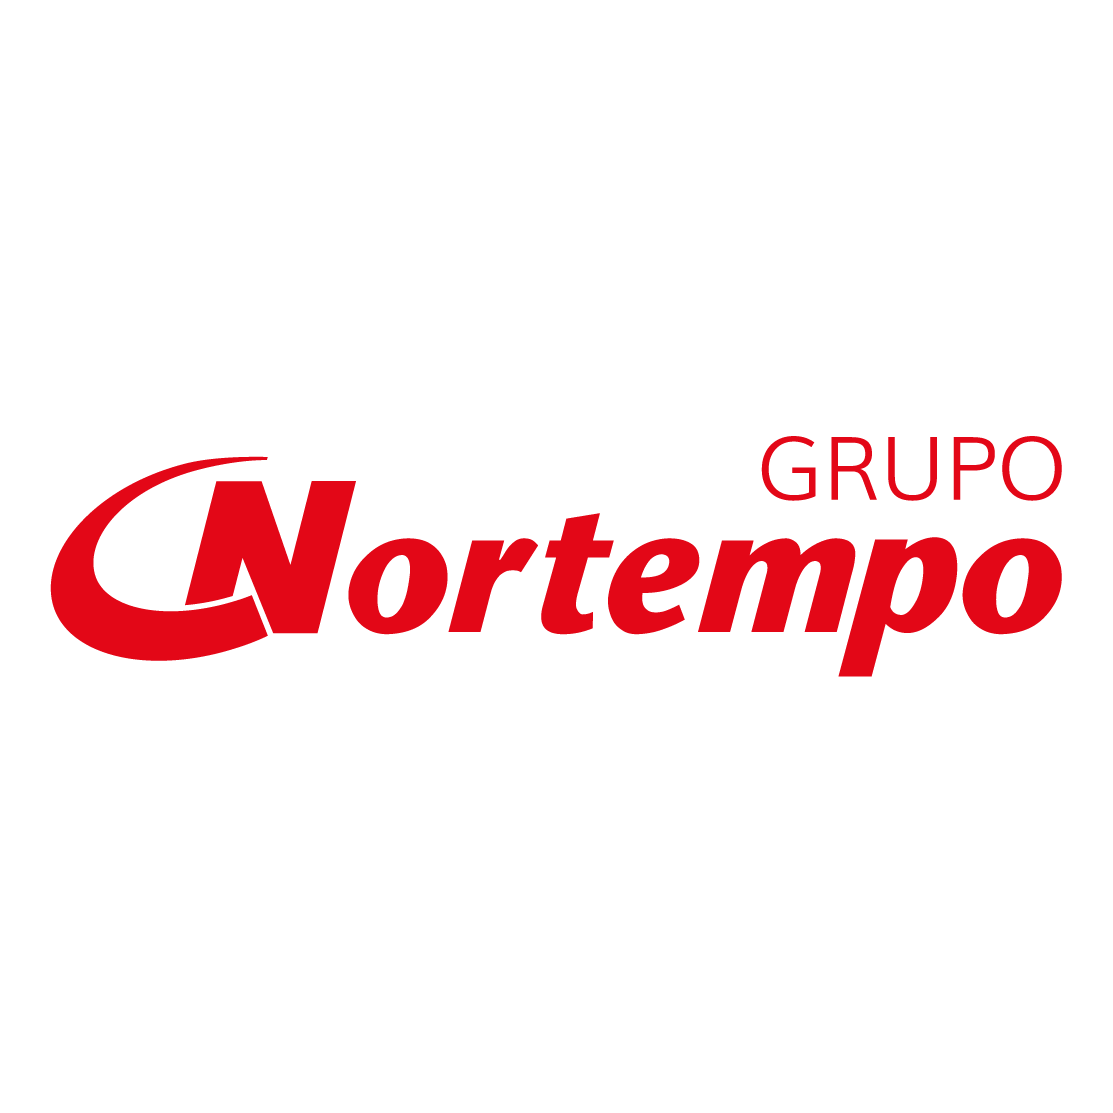 Nortempo logo